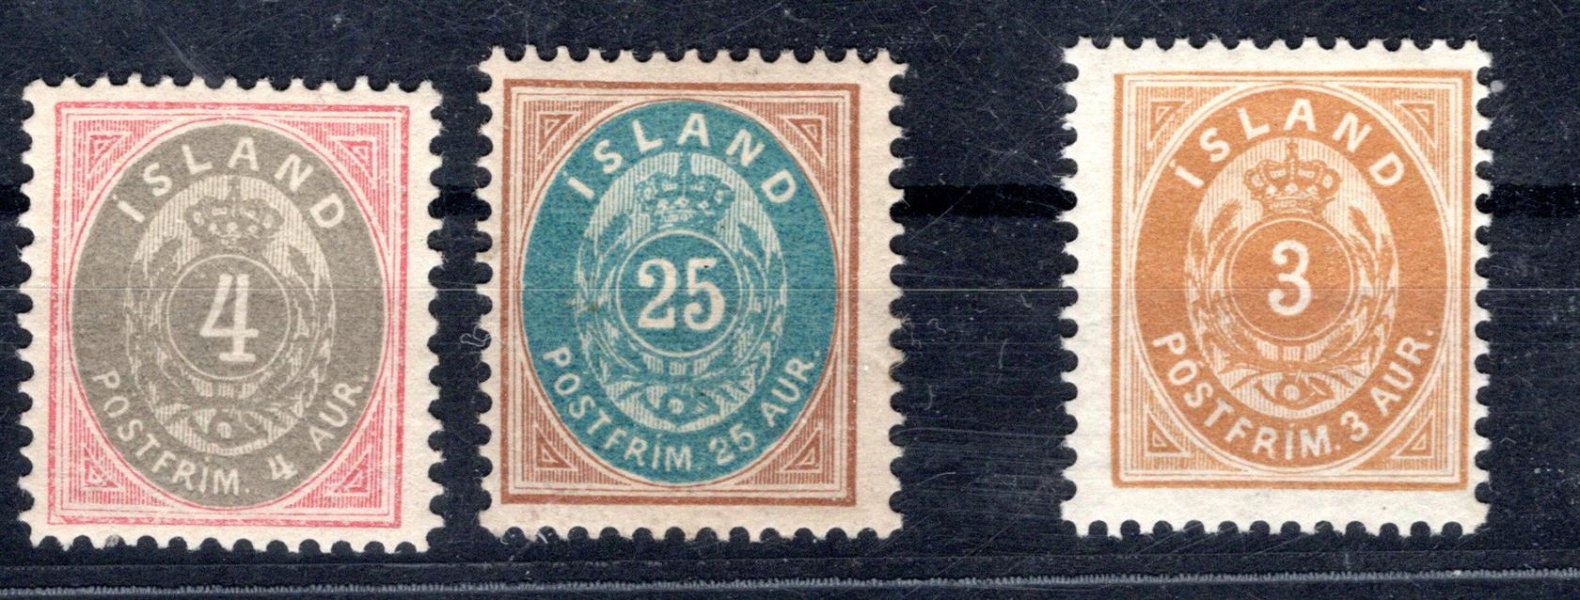 Island - Mi. 20 - 3, výplatní, číslice s korunkou